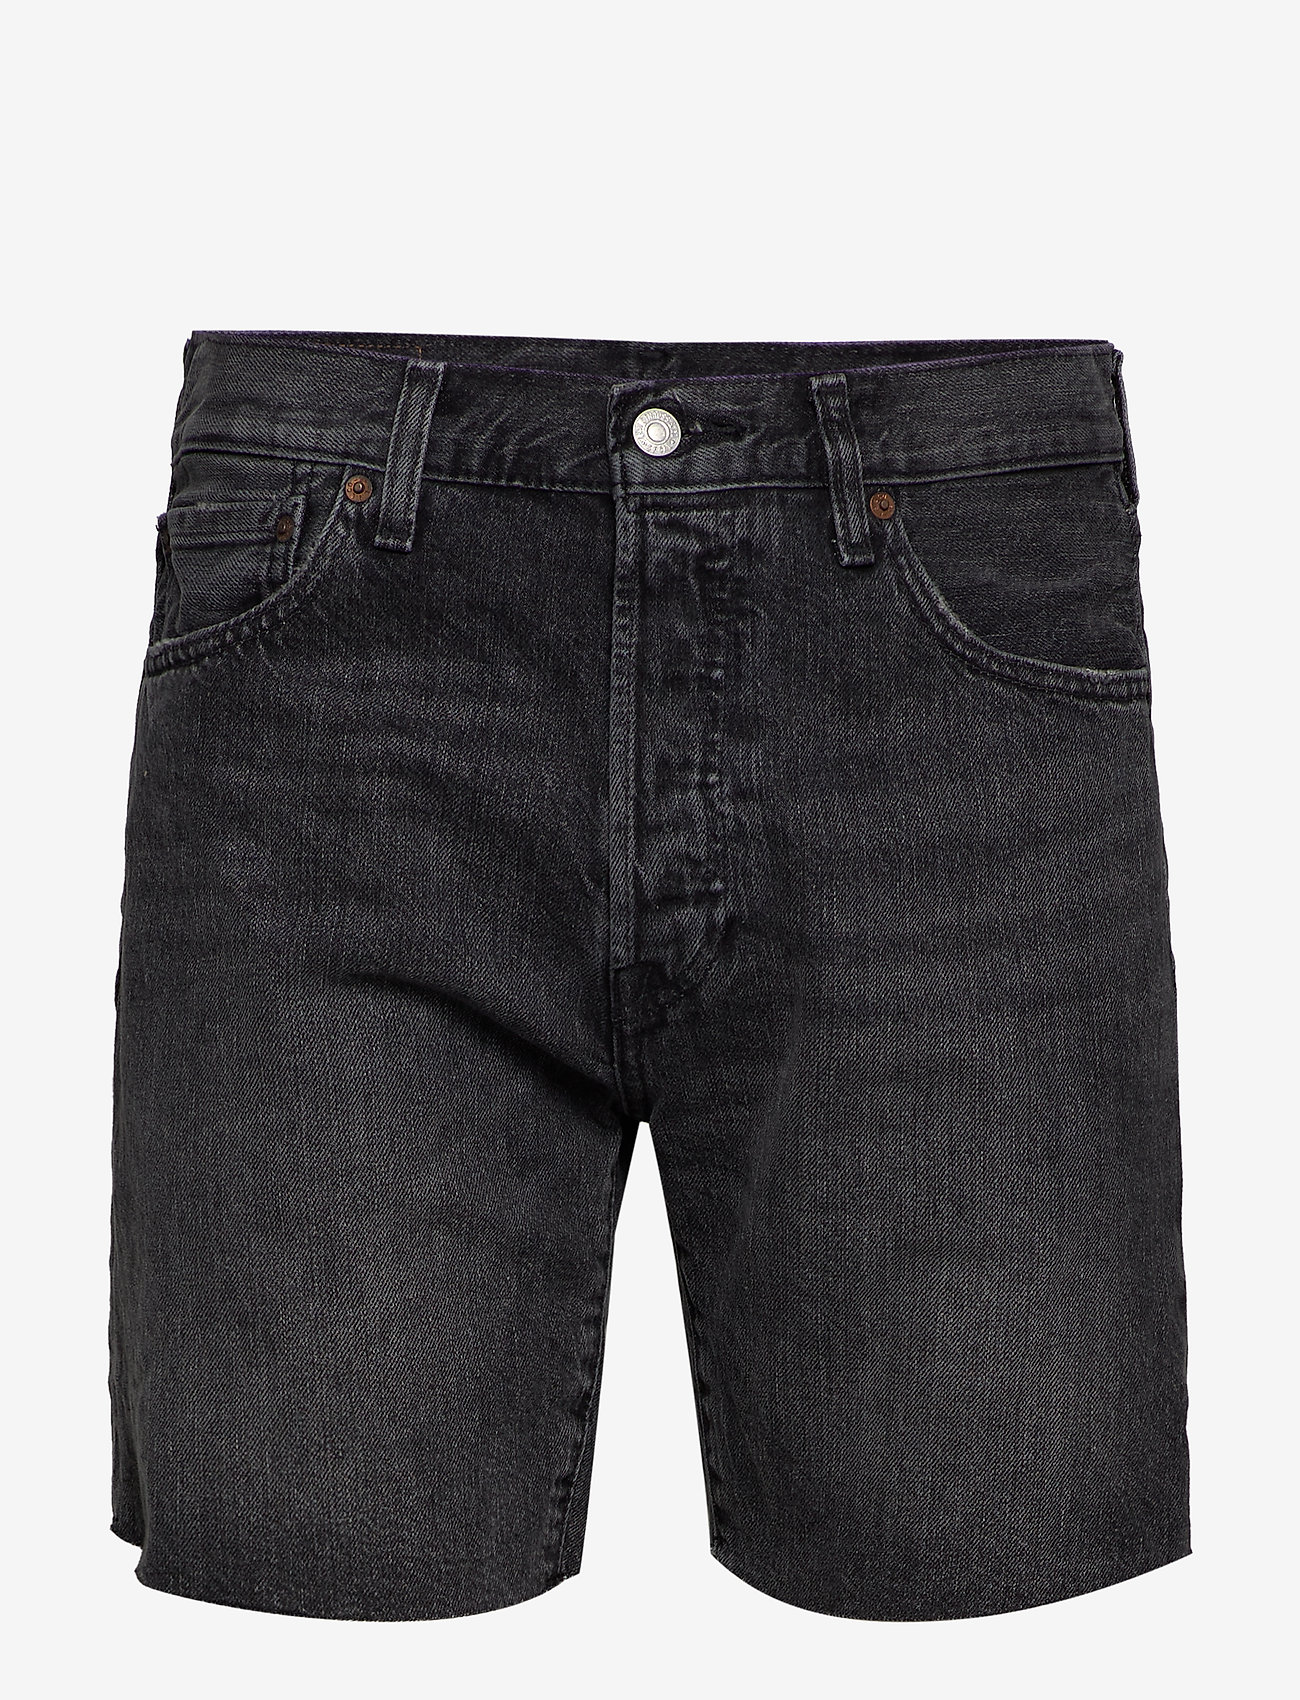 black 501 levis shorts